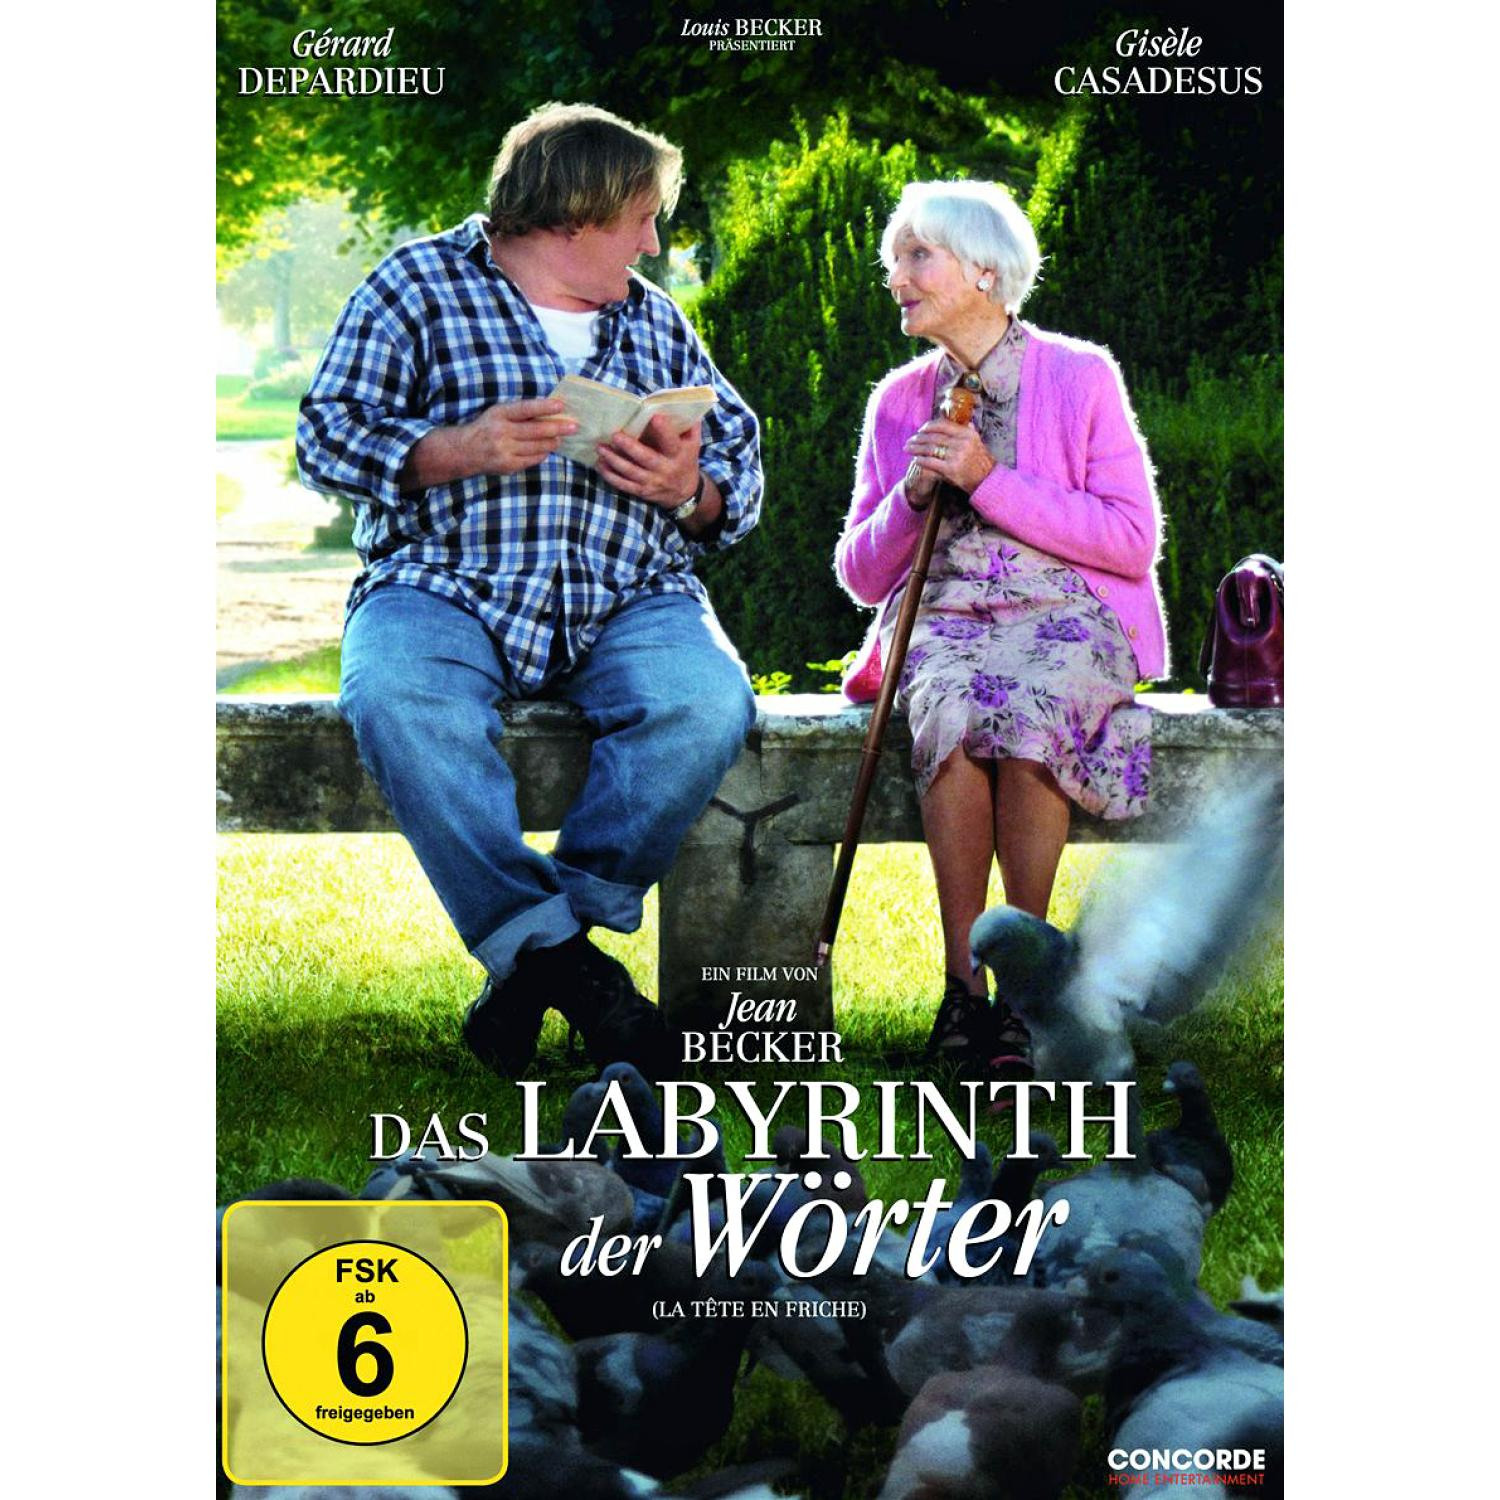 Das Labyrinth DVD Wörter der